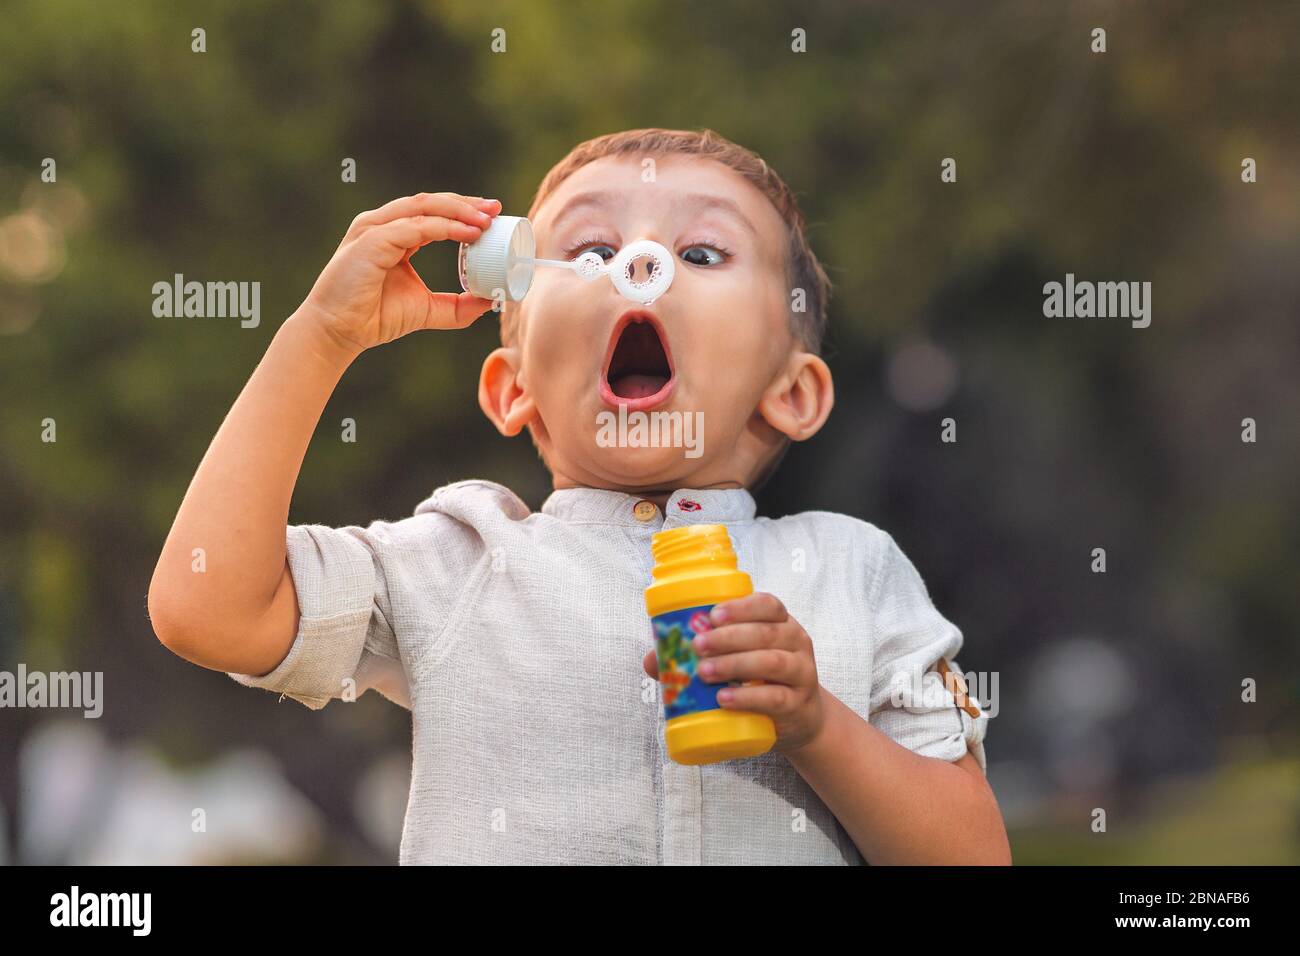 Bébé Enfant avec du savon dans les yeux Photo Stock - Alamy